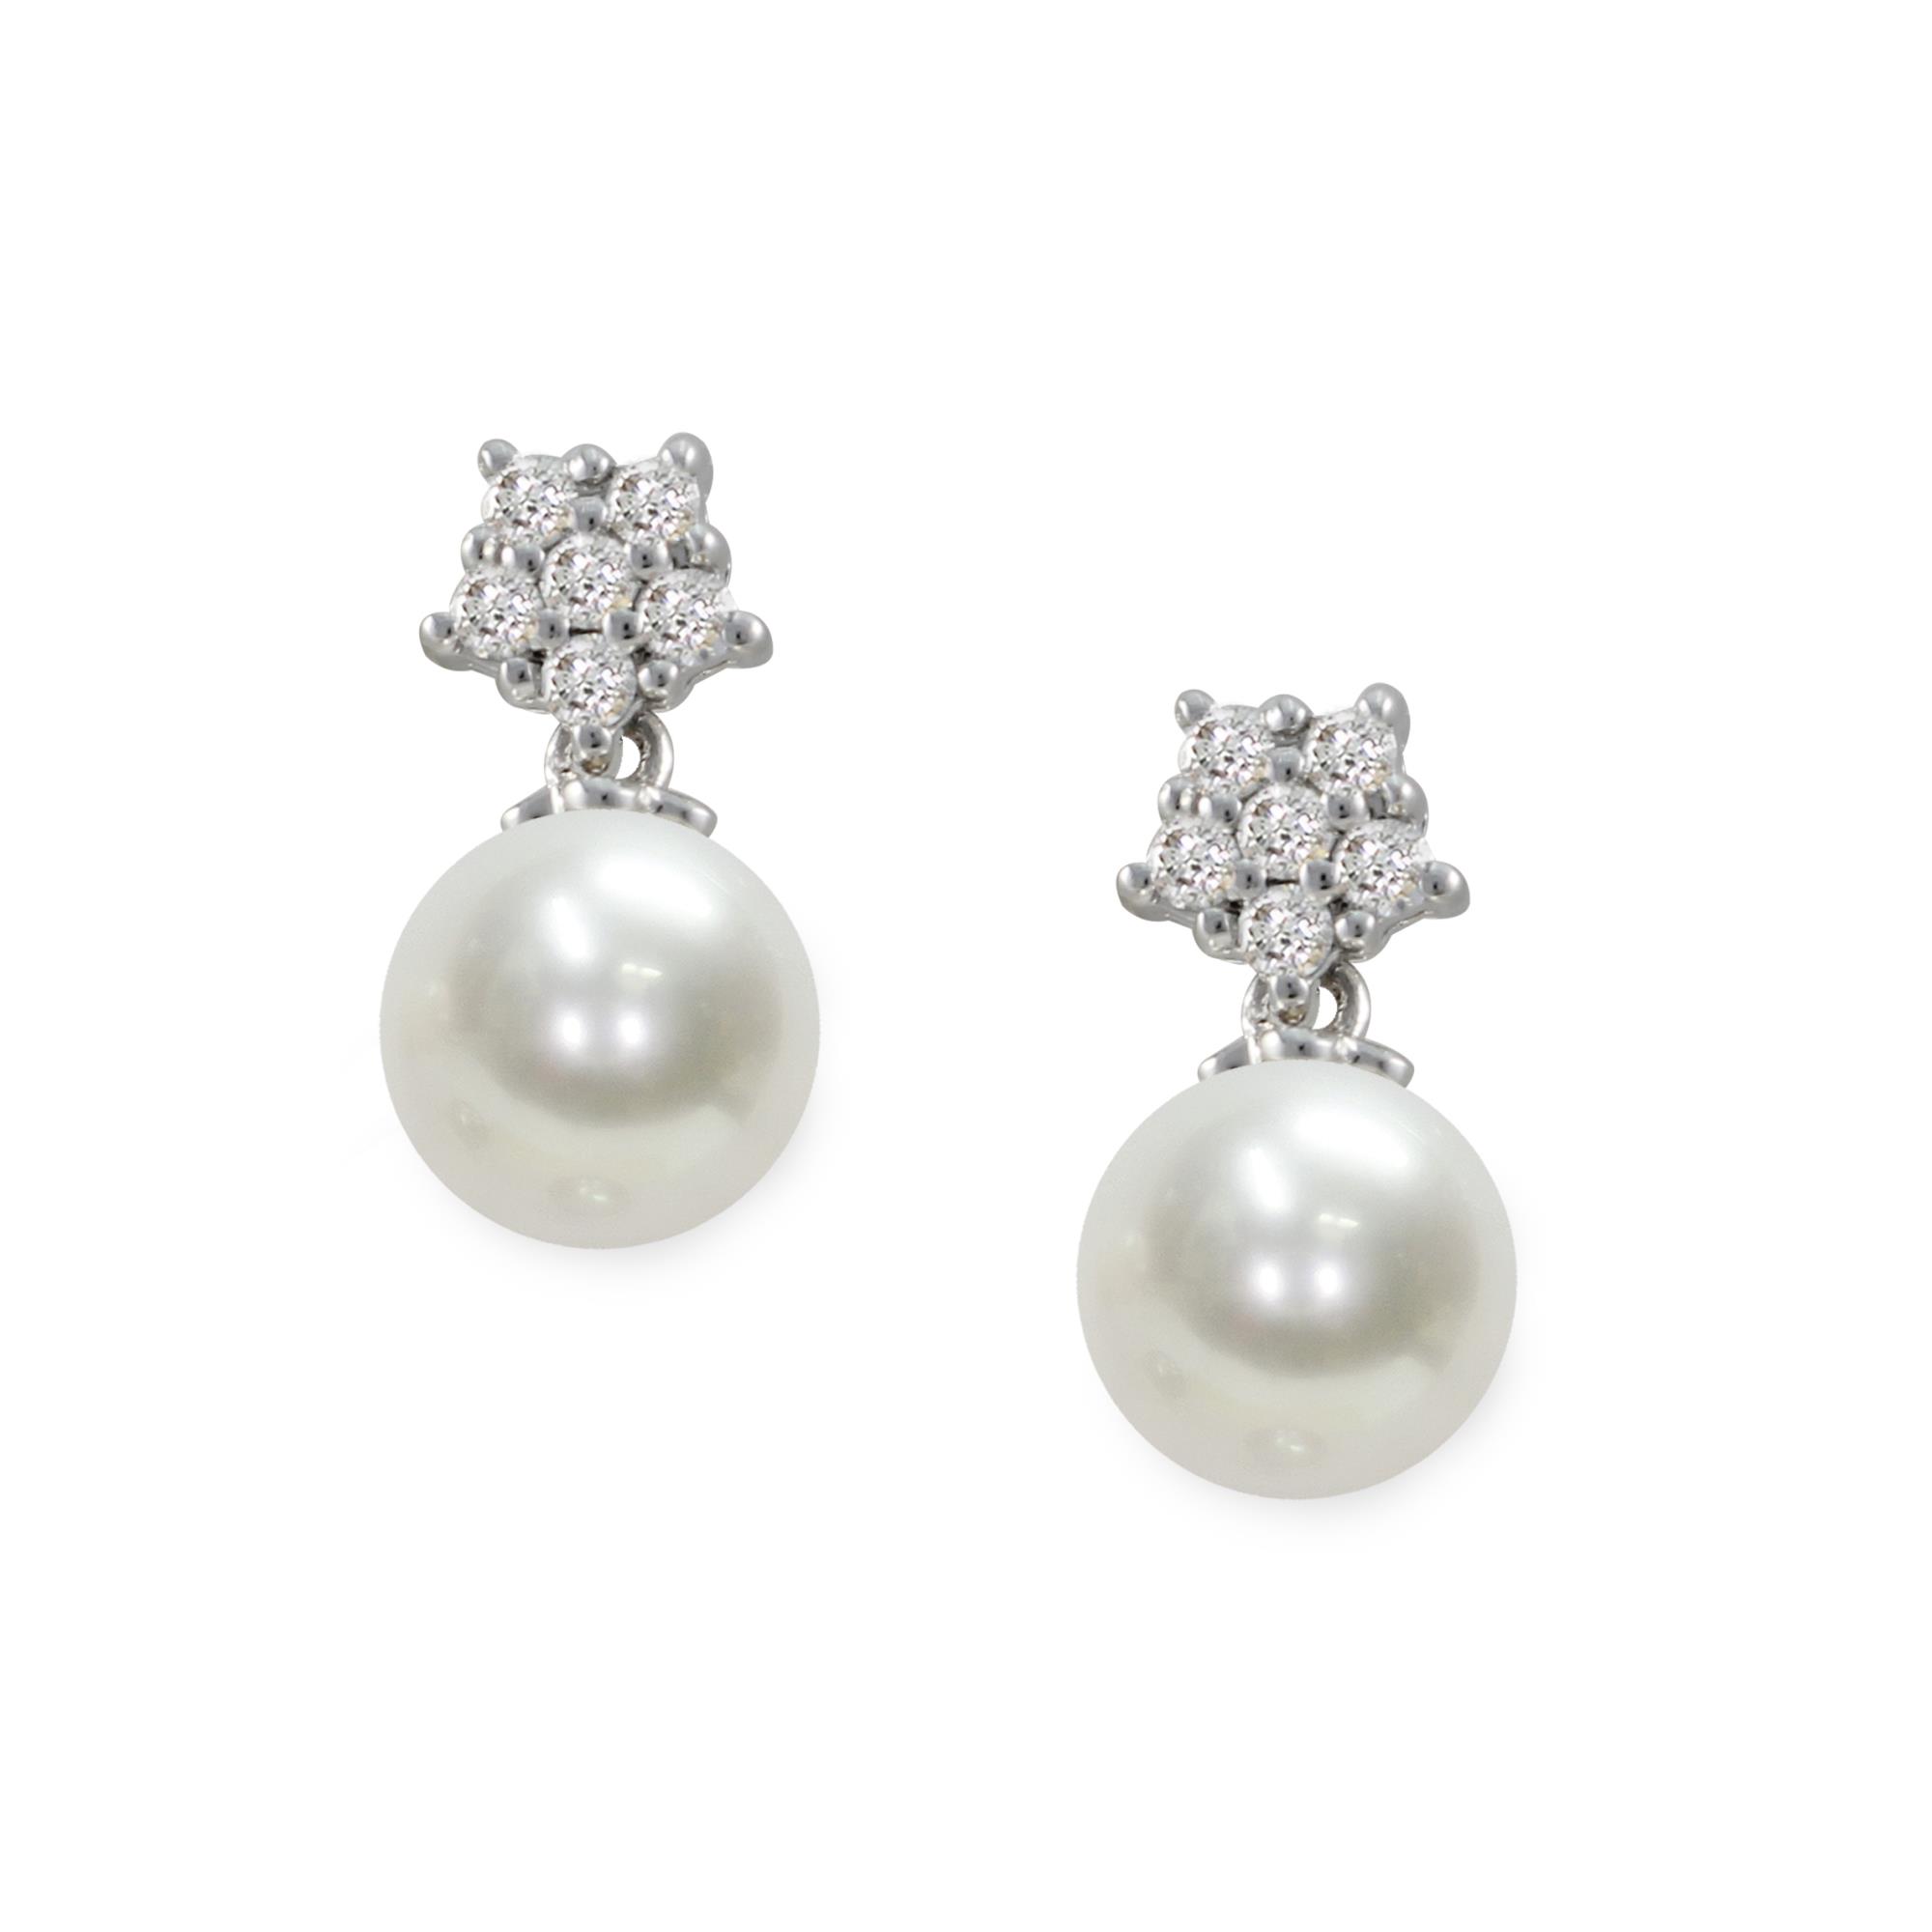 Pendientes de oro blanco de 18kt con perla de Akoya y diamantes - MAYUMI